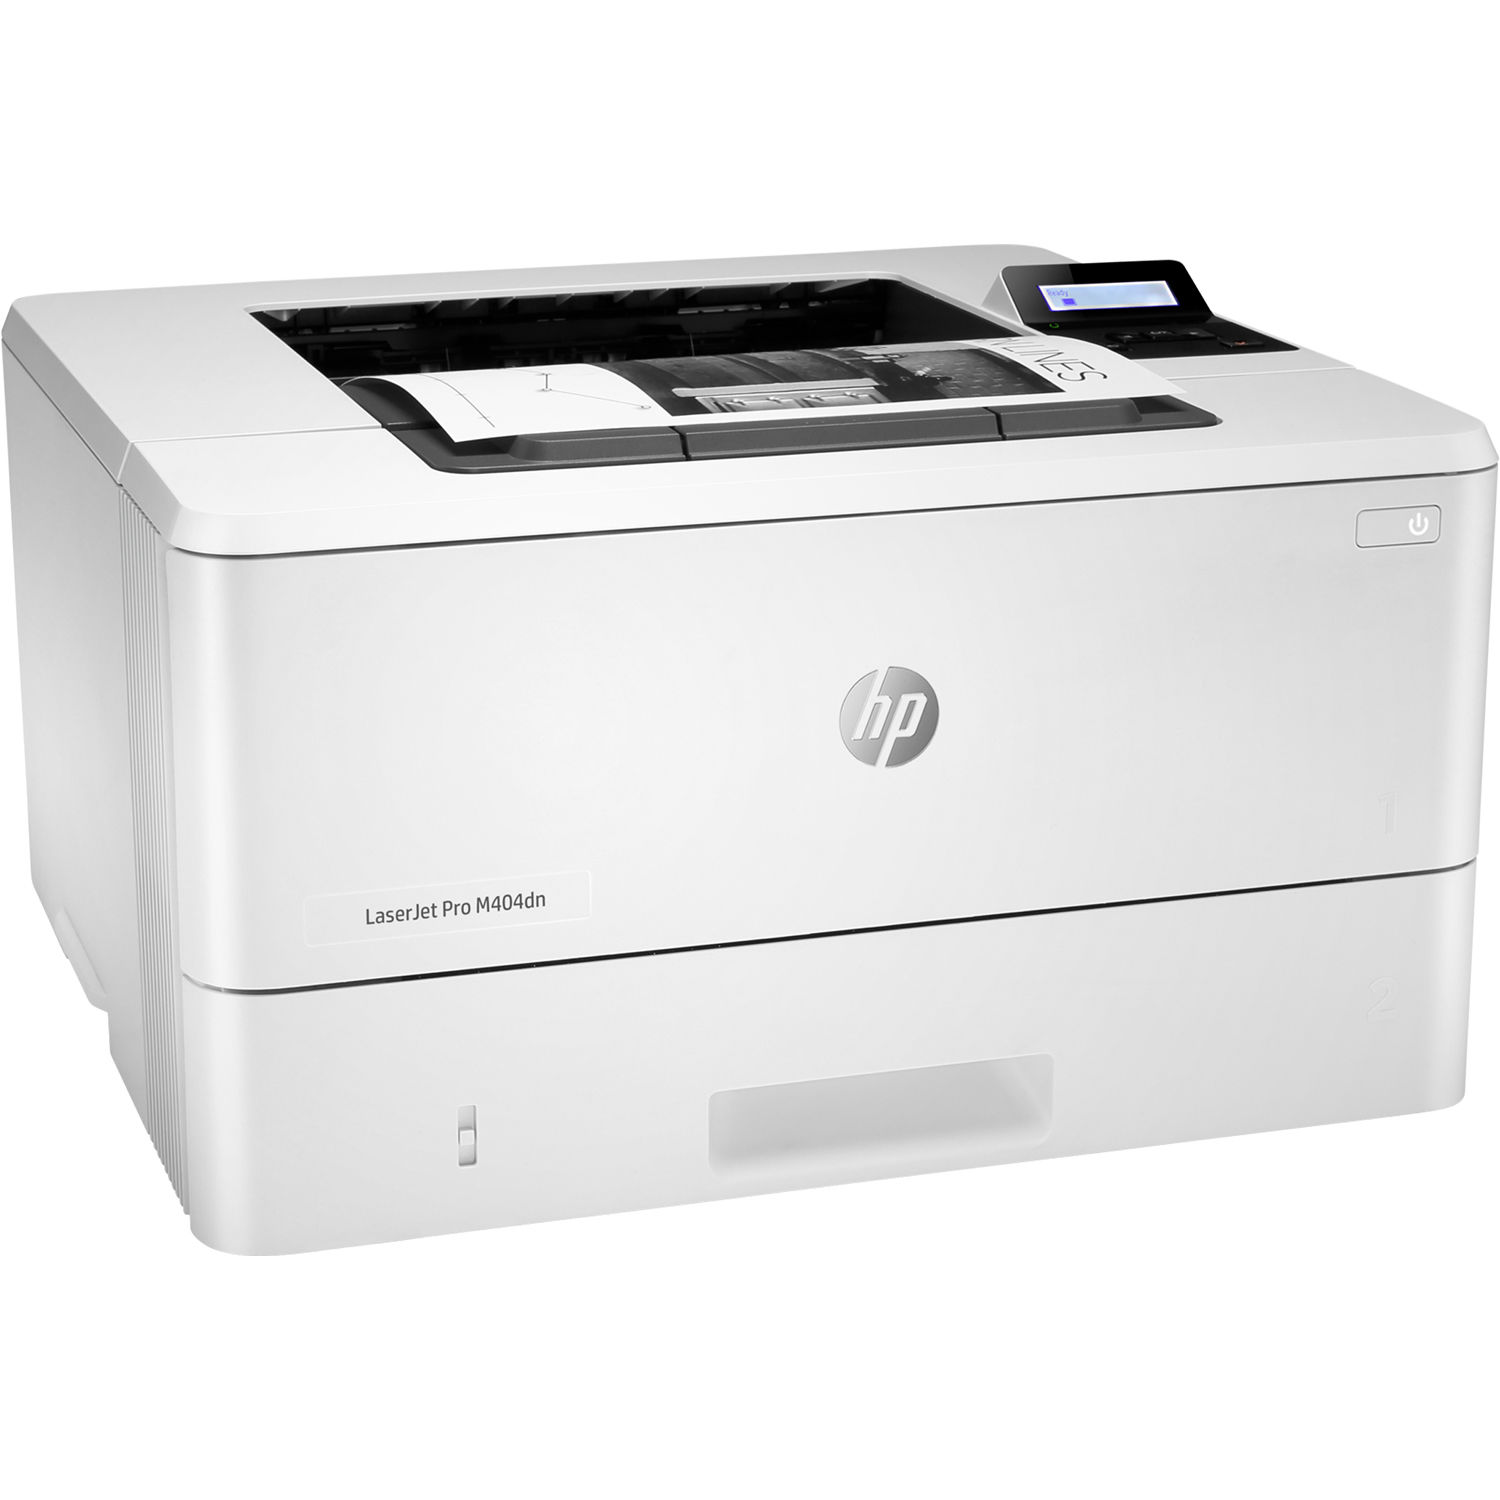 HP LaserJet Pro M404dn Monochrome Laser Printer (W1A53A)